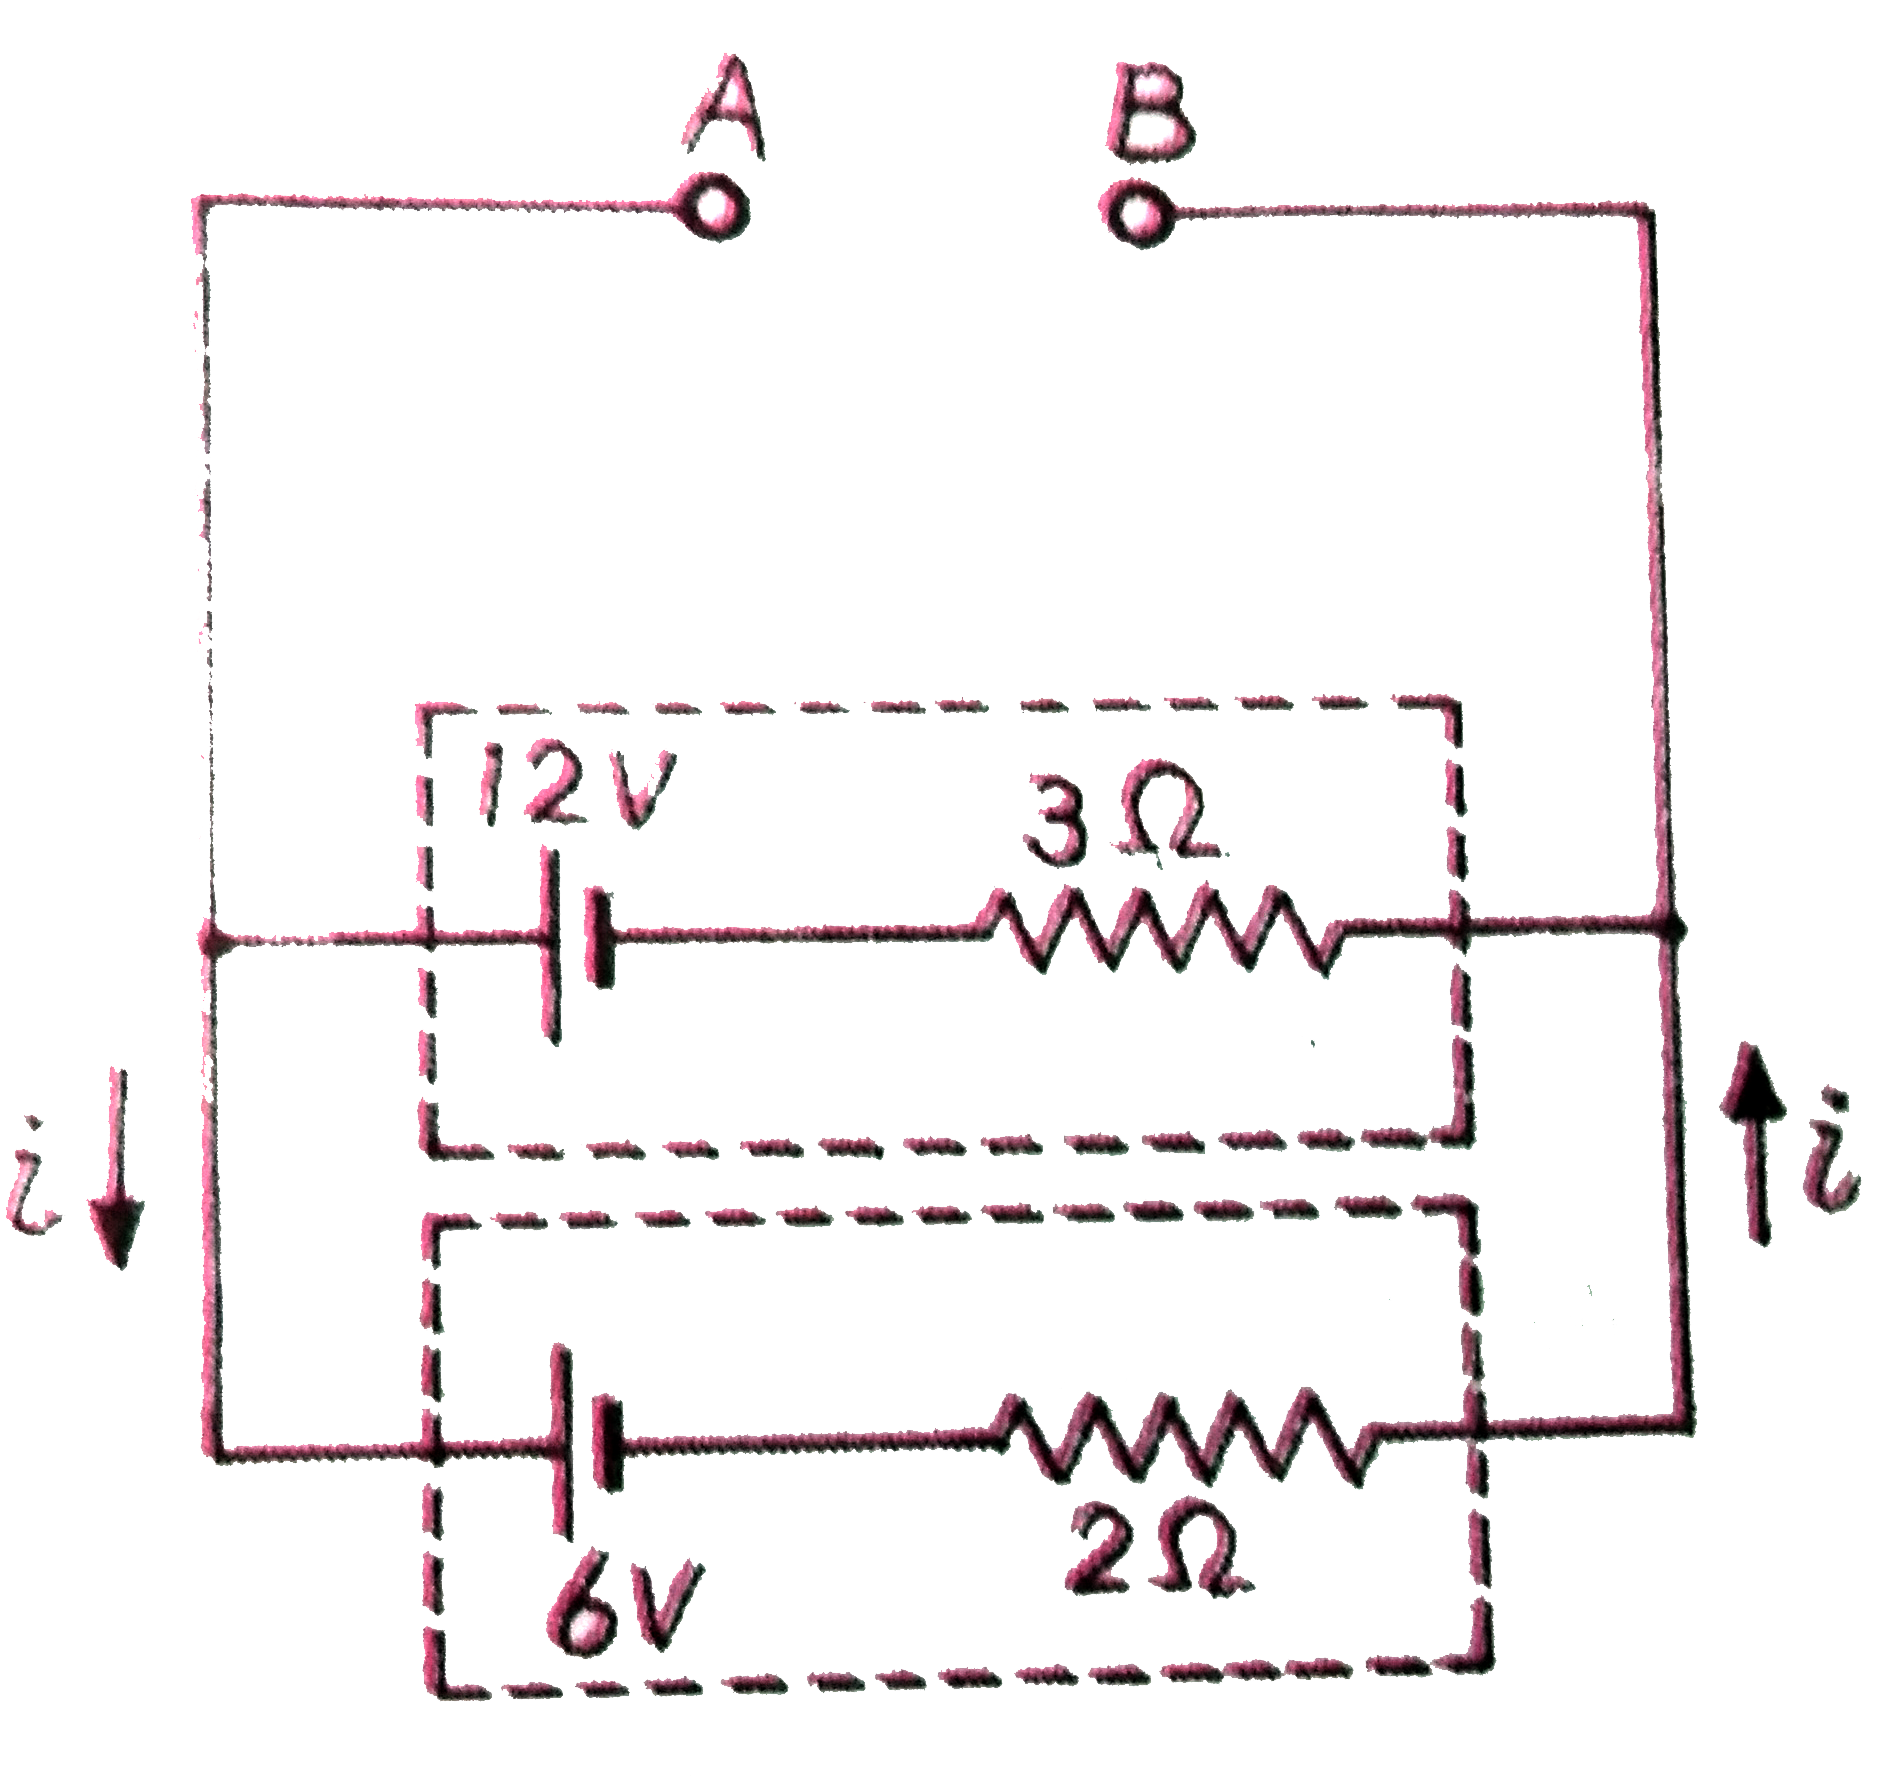 संलग्न  चित्र में प्रत्येक  वैधुत  सेल का विधुत  वाहक  बल  एवं  आंतरिक  प्रतिरोध  दिया  गया  है ।  बिंदुओं  A व B  के बीच  वैधुत  विभवान्तर  की गणना  कीजिए ।